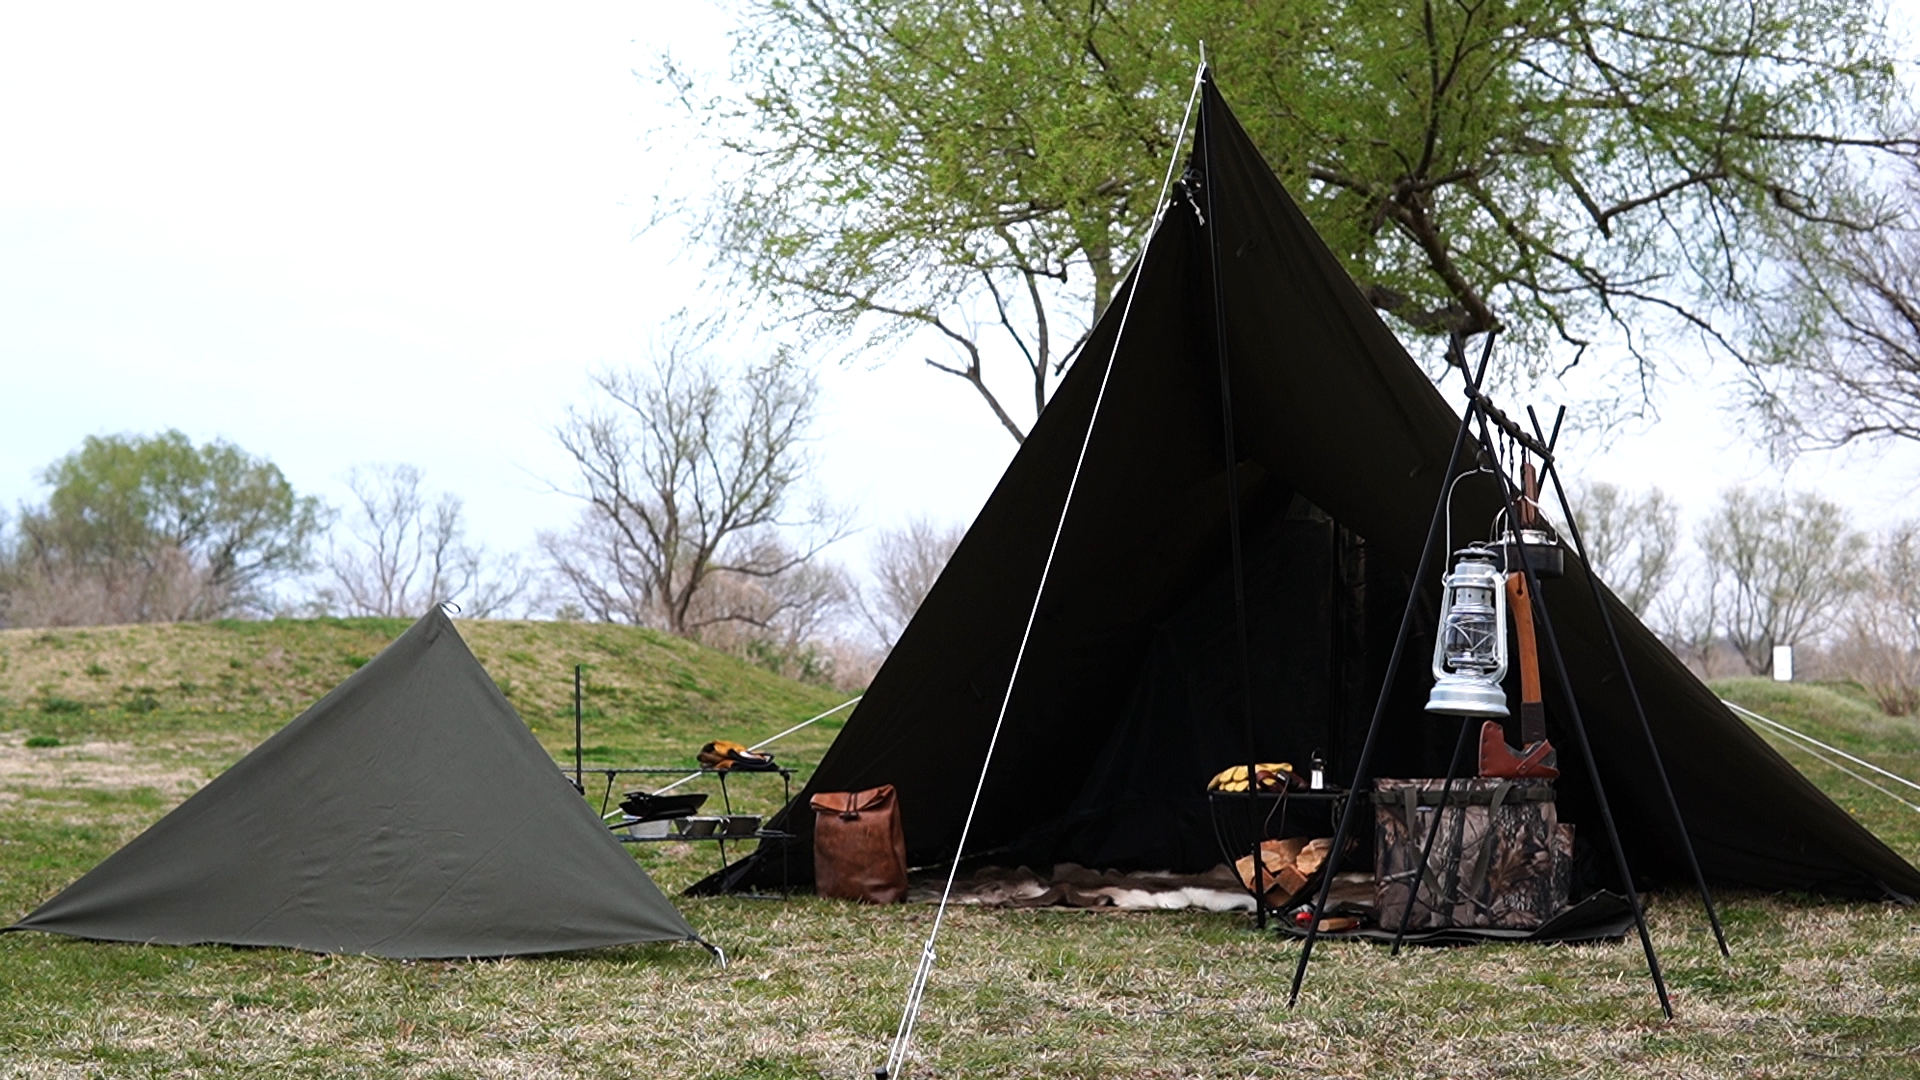 ソロキャンプに最適なテント_バンドックソロティピー１TC_レイアウトも含めてレビュー | ソロキャンブログ